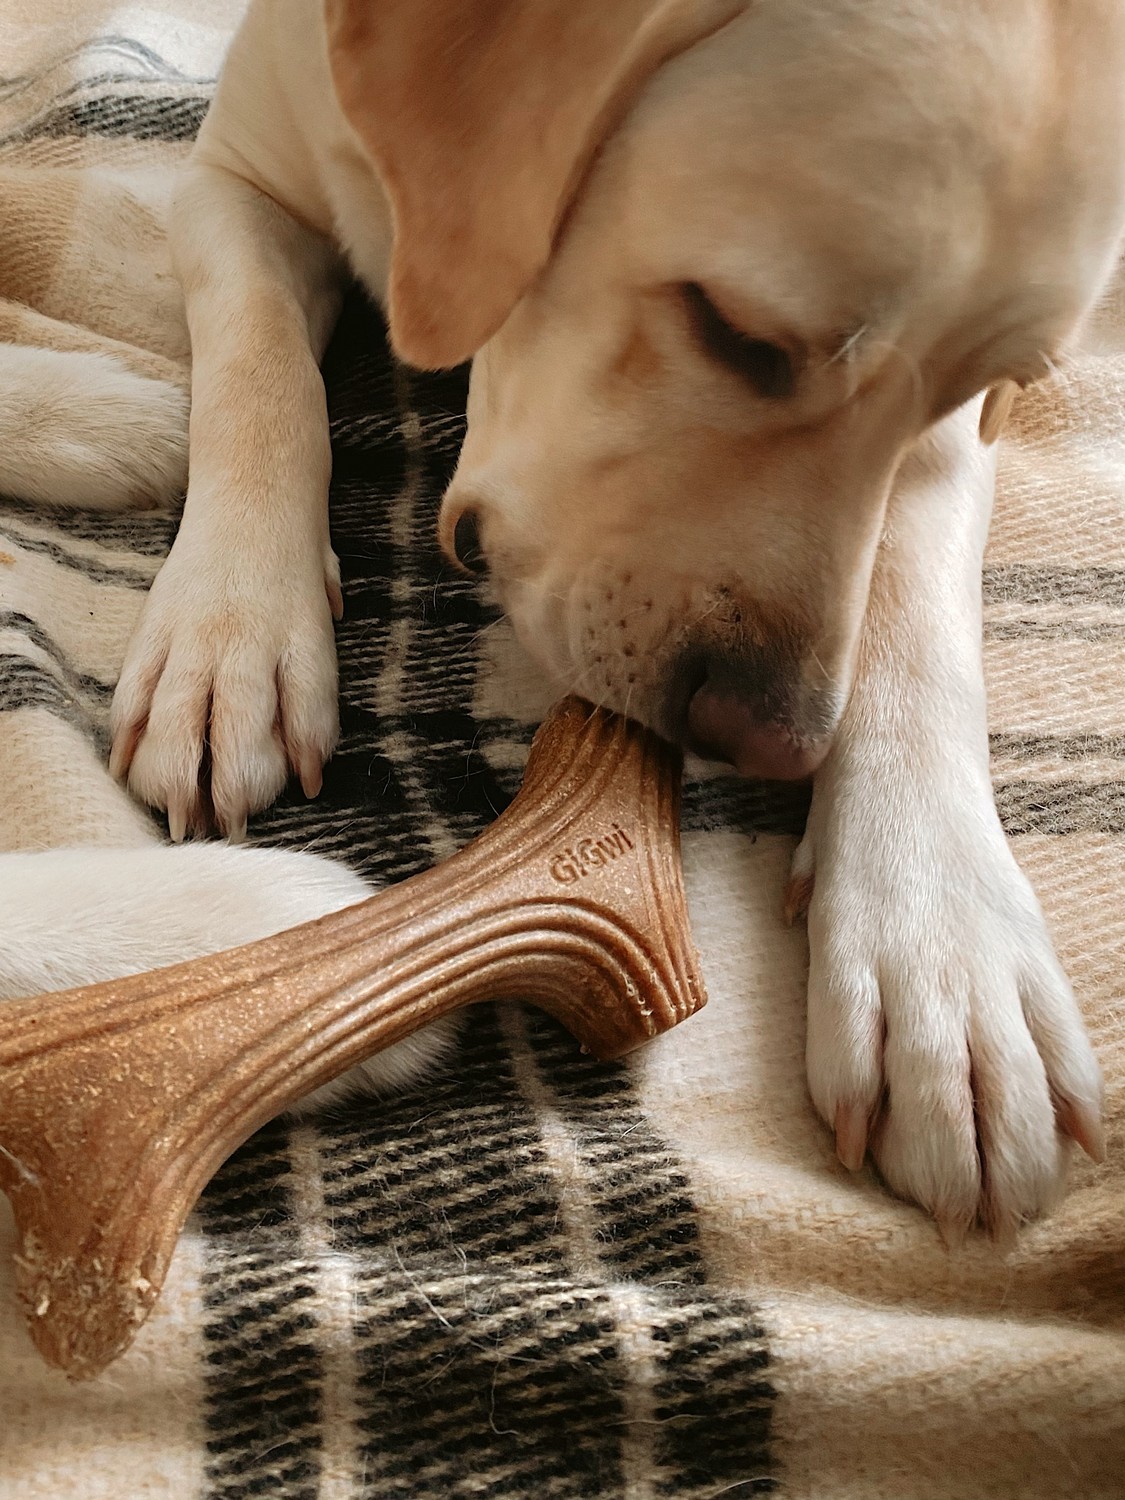 Іграшка для собак Ріг жувальний GiGwi Wooden Antler, дерево, полімер